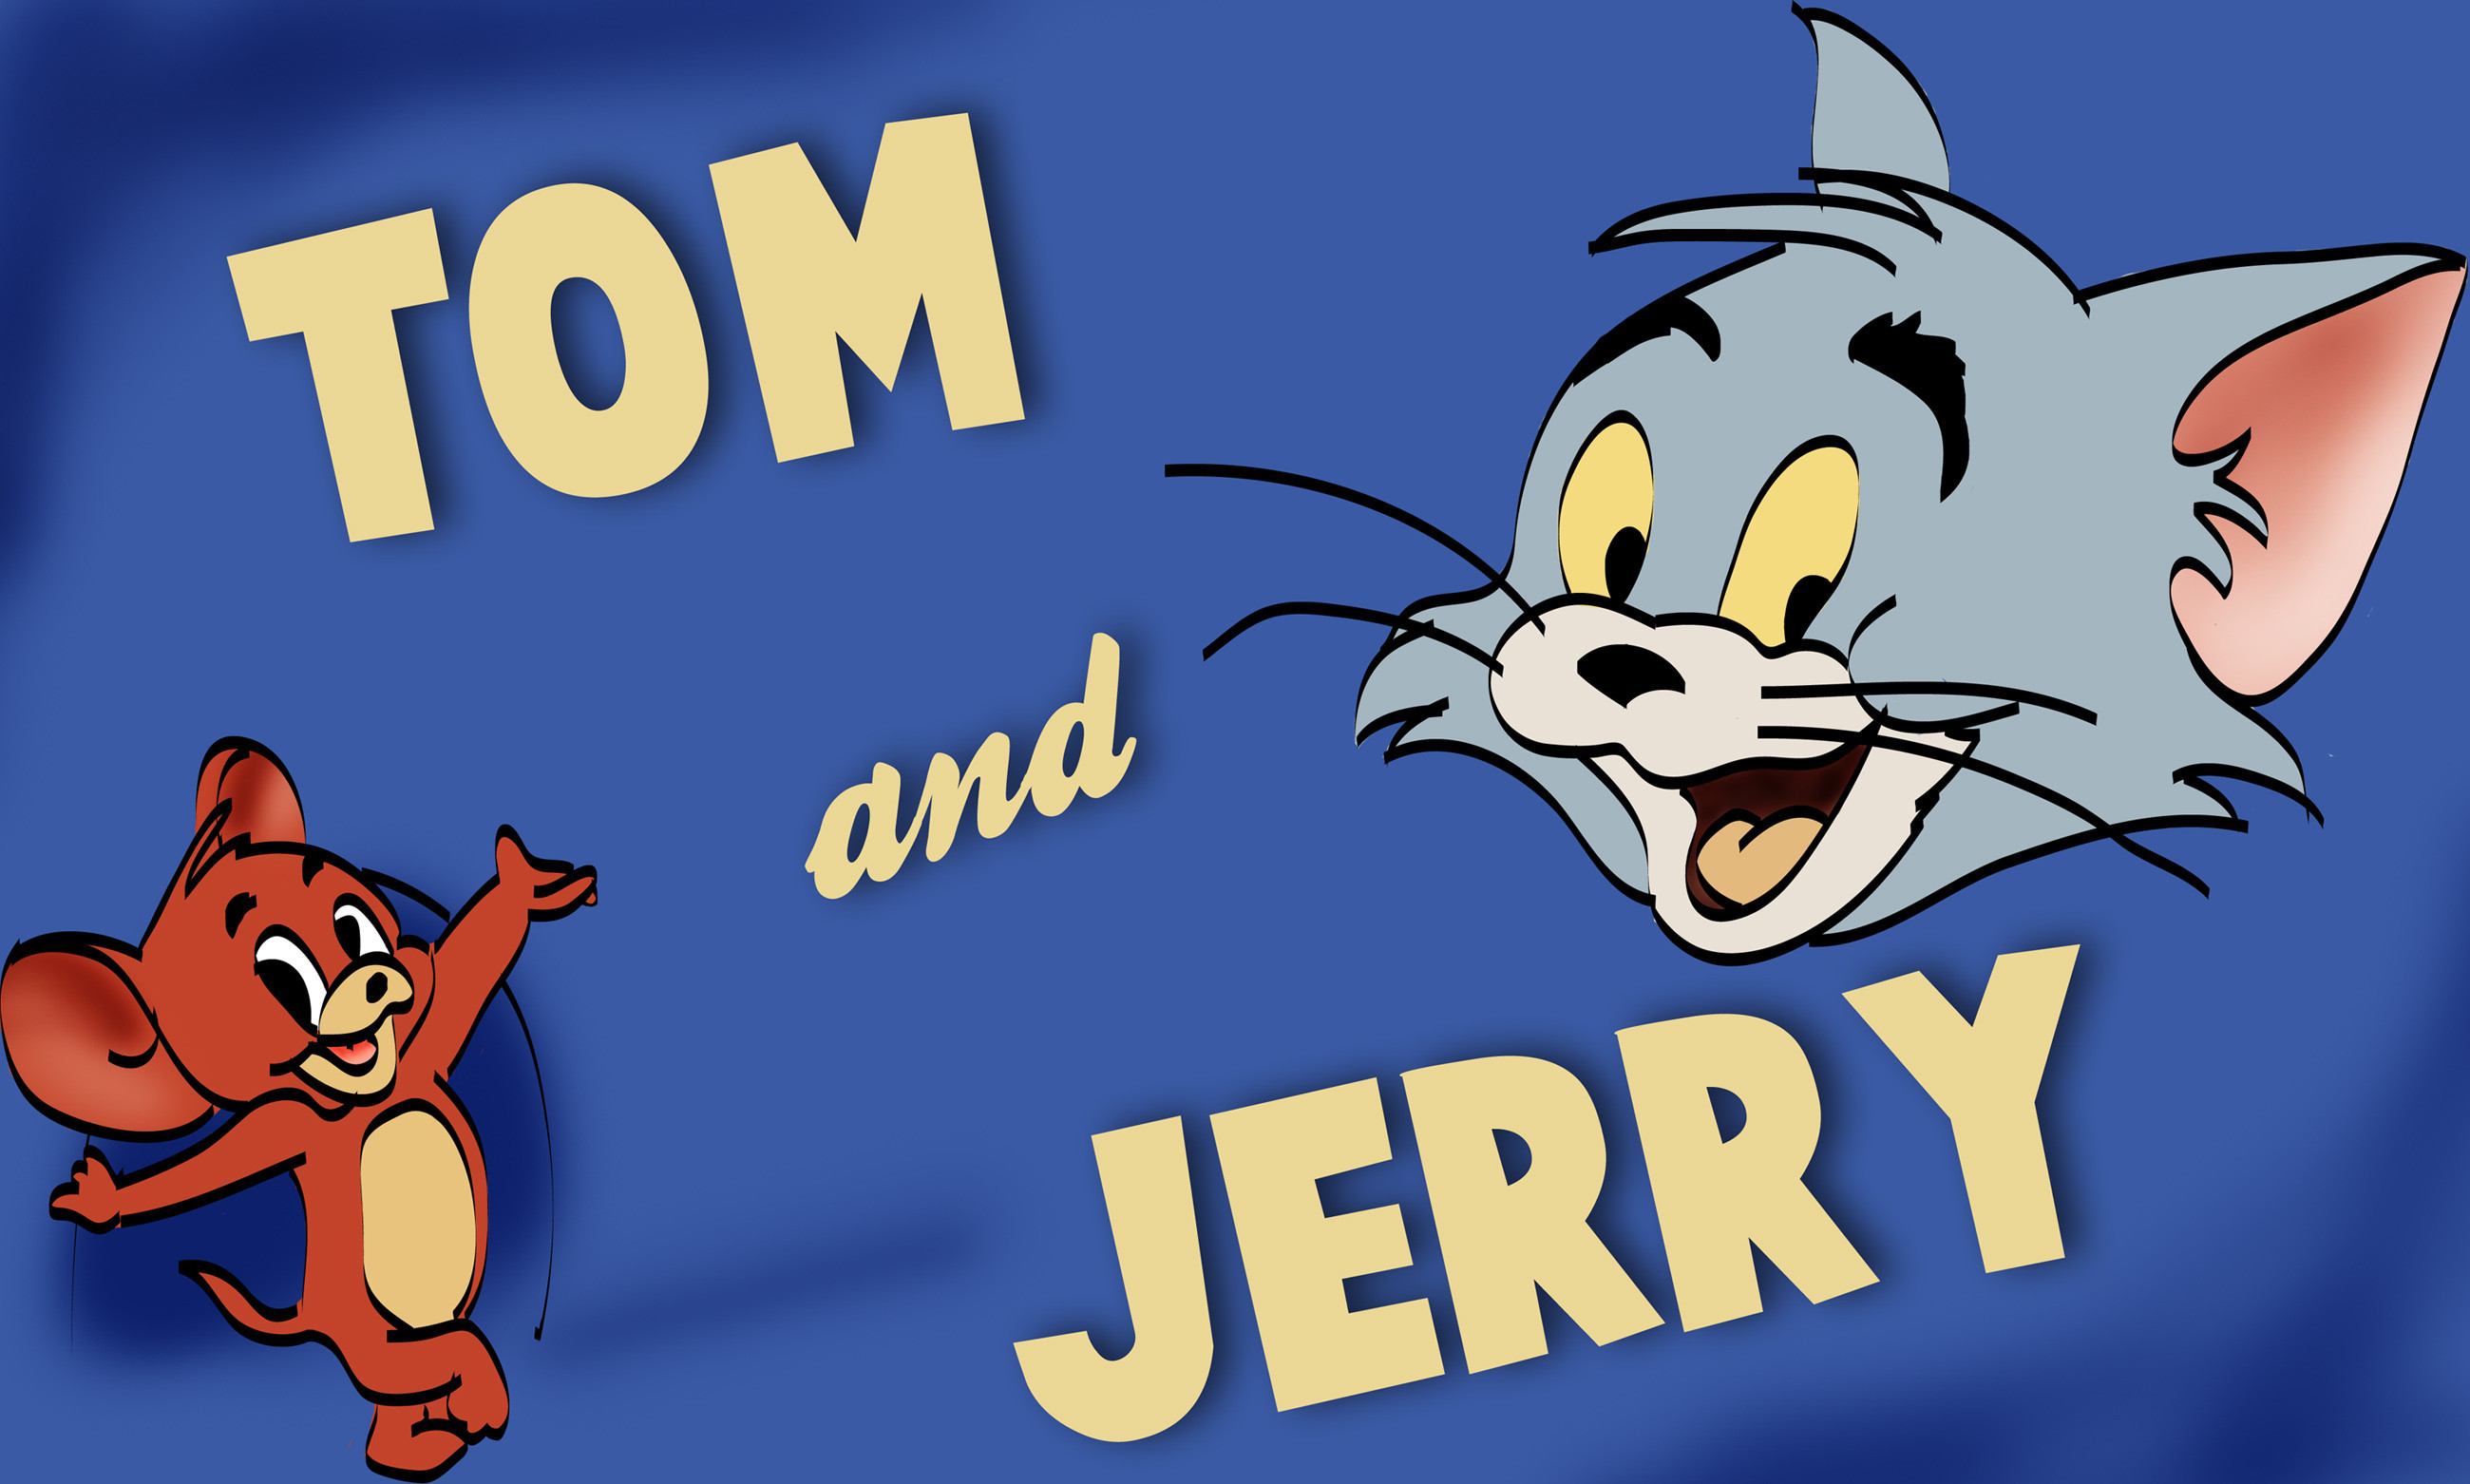 Читай том и ход. Tom and Jerry. Том и Джерри обложка мультфильма. NJV B LKTHB. Том и Джерри картинки.